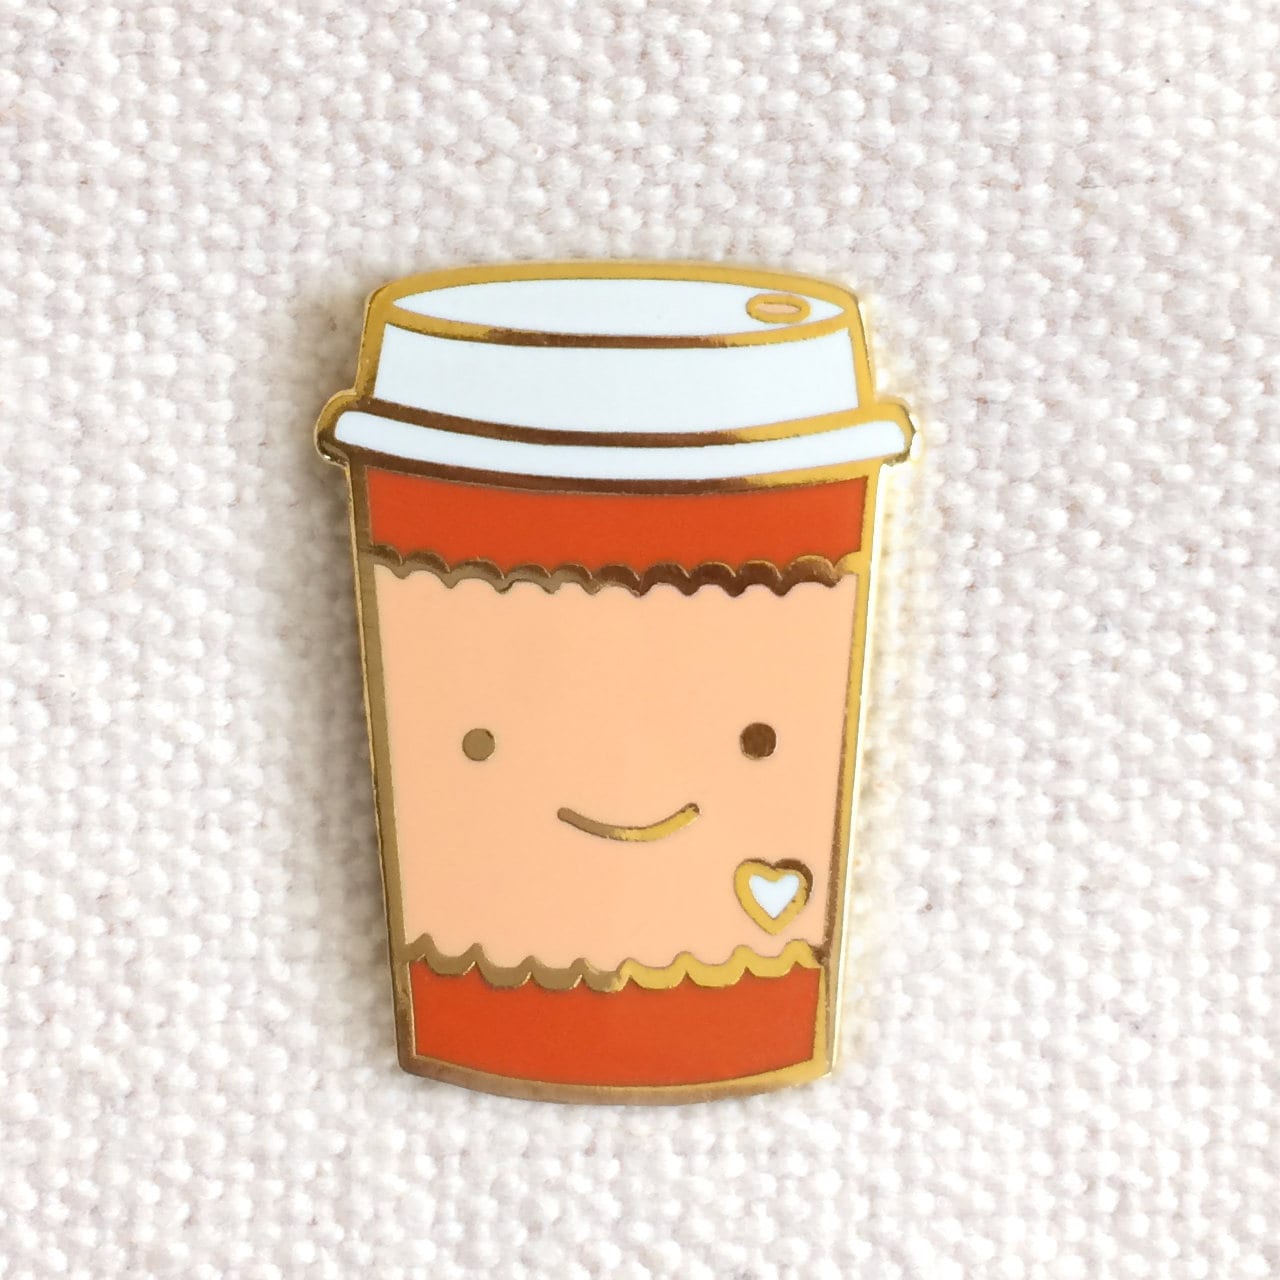 Pin on Coffee